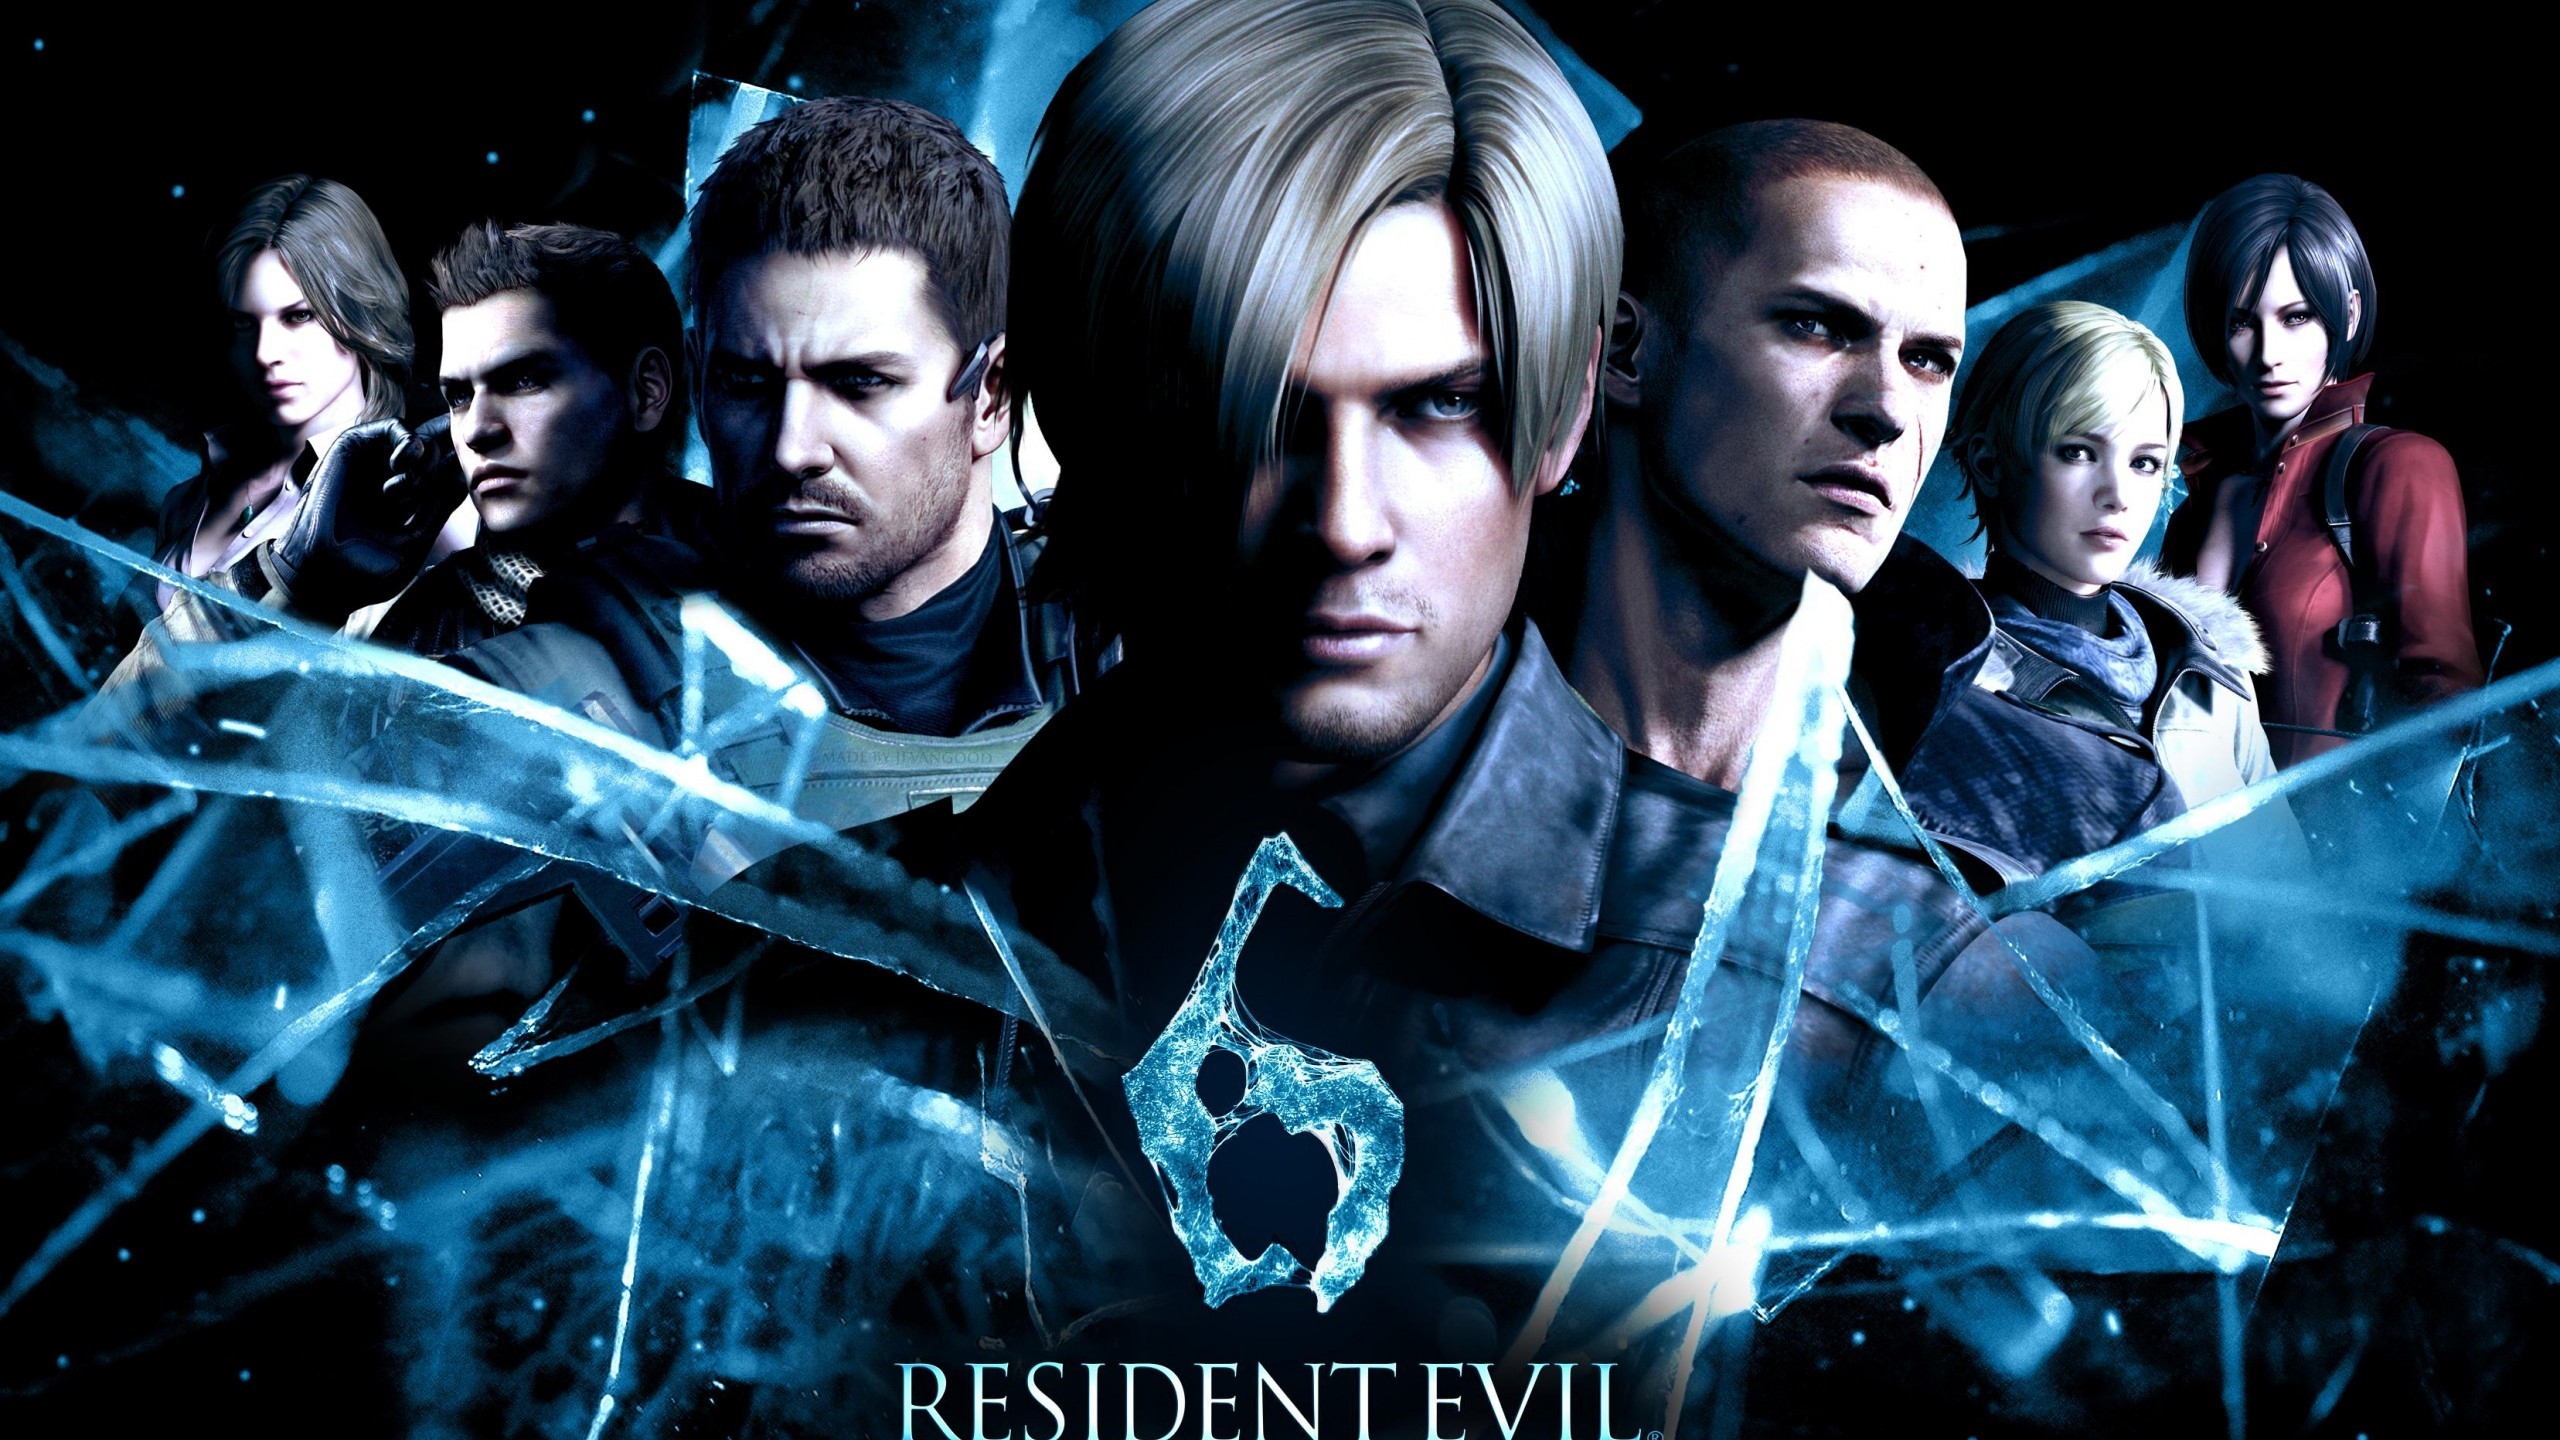 Resident Evil 6 2014 for 2560x1440 HDTV resolution